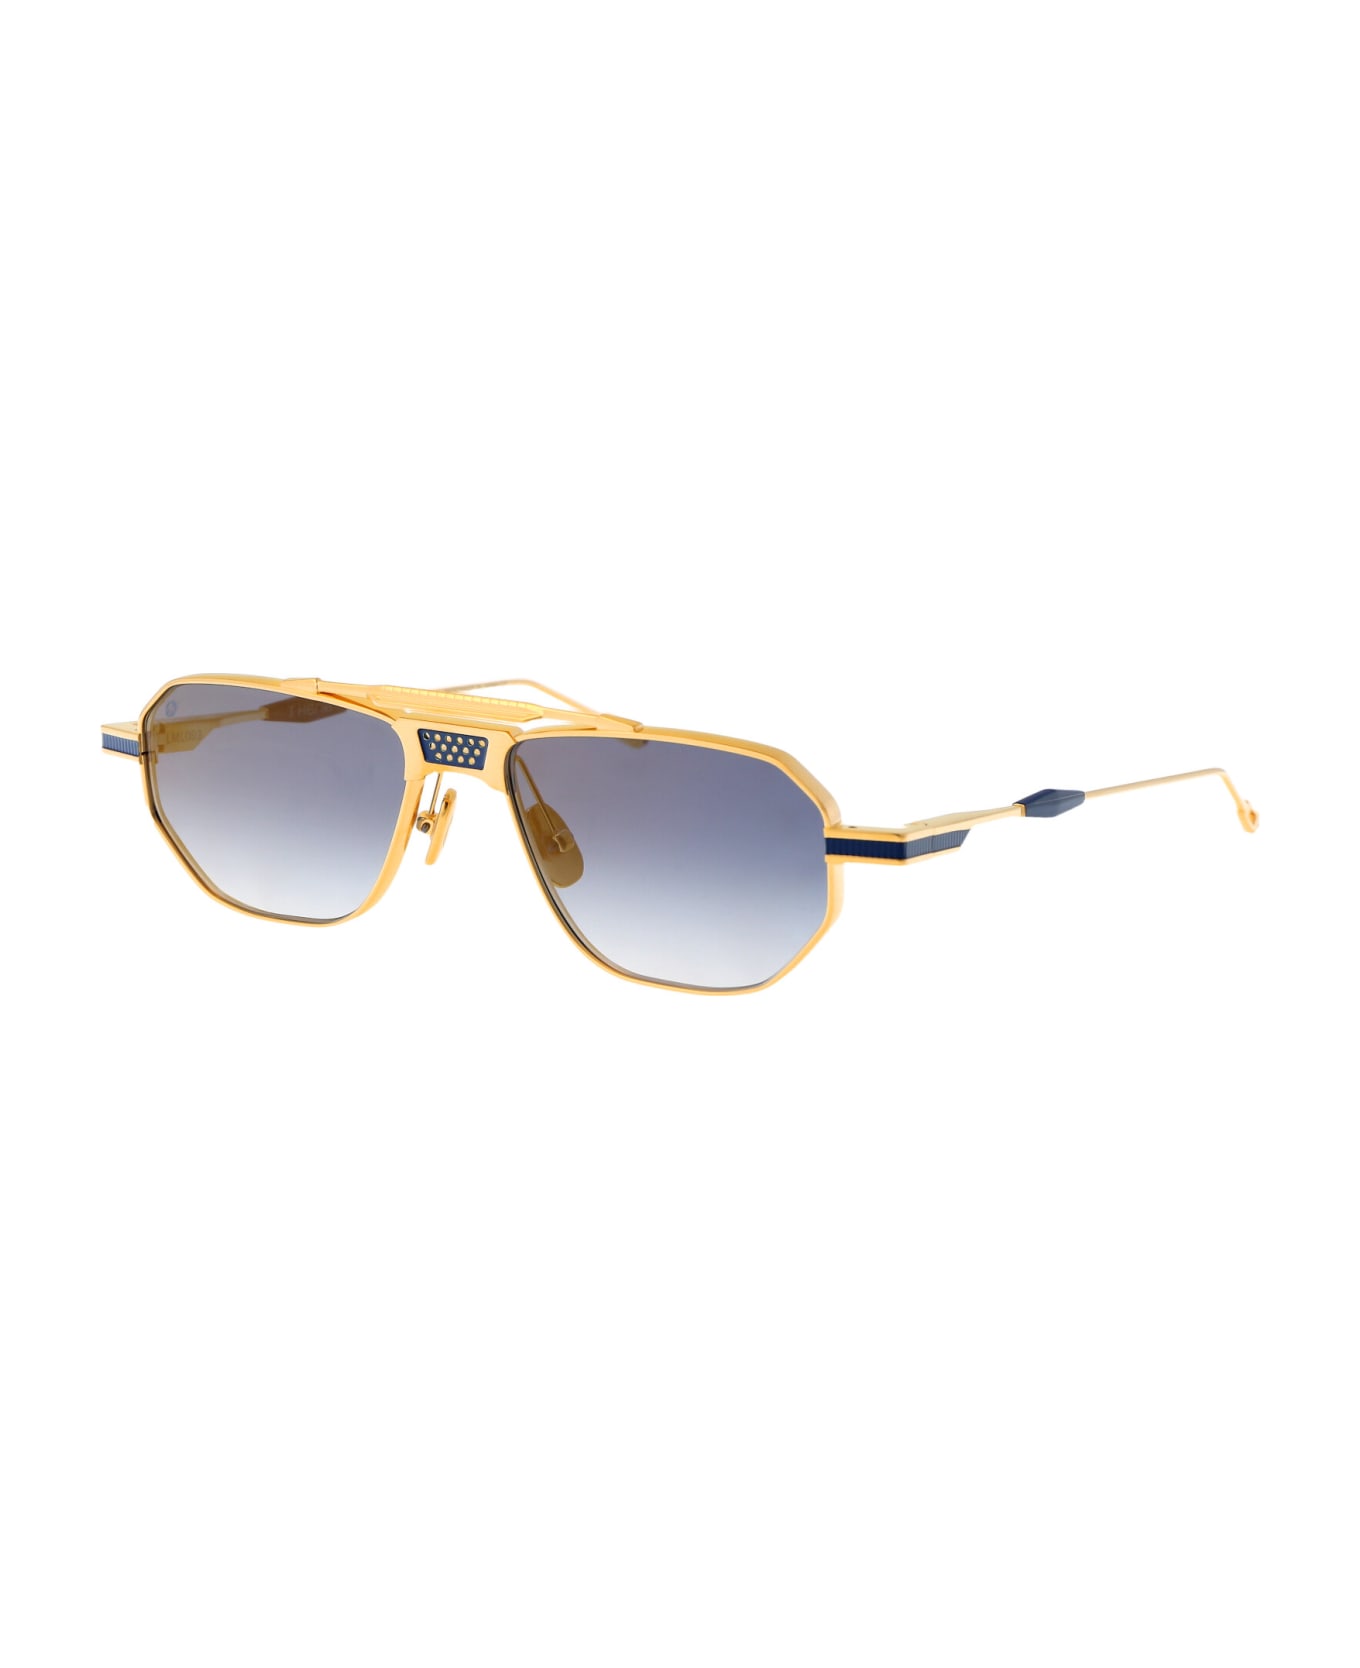 T Henri Longtail Sunglasses - L'OR BLEU サングラス